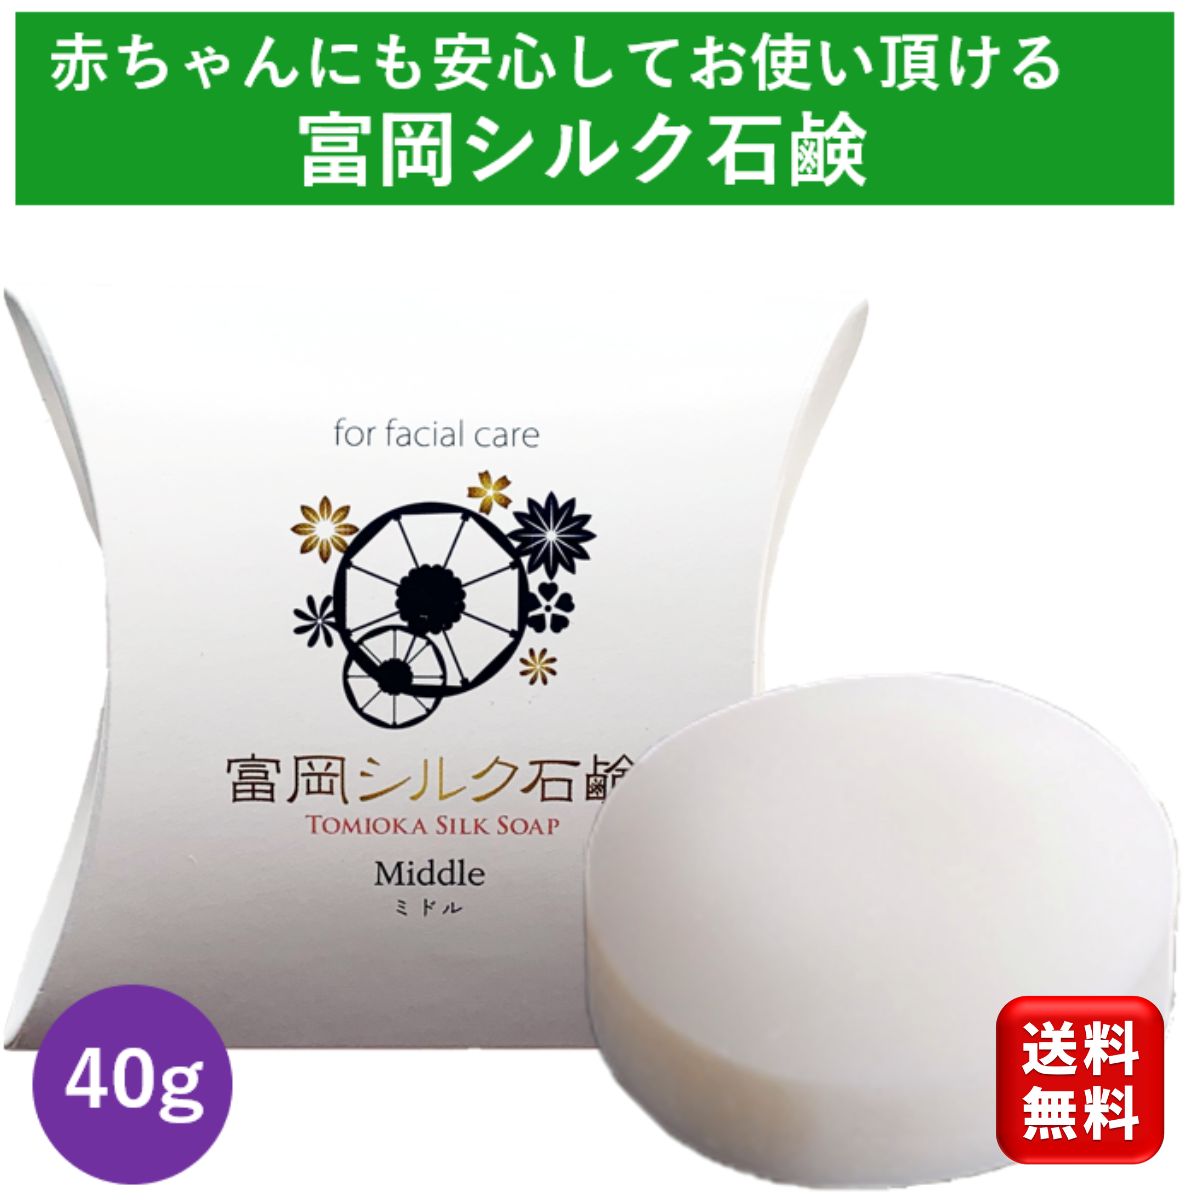 富岡シルク石鹸 ミドルサイズ 40g しるく 洗顔石鹸 絹工